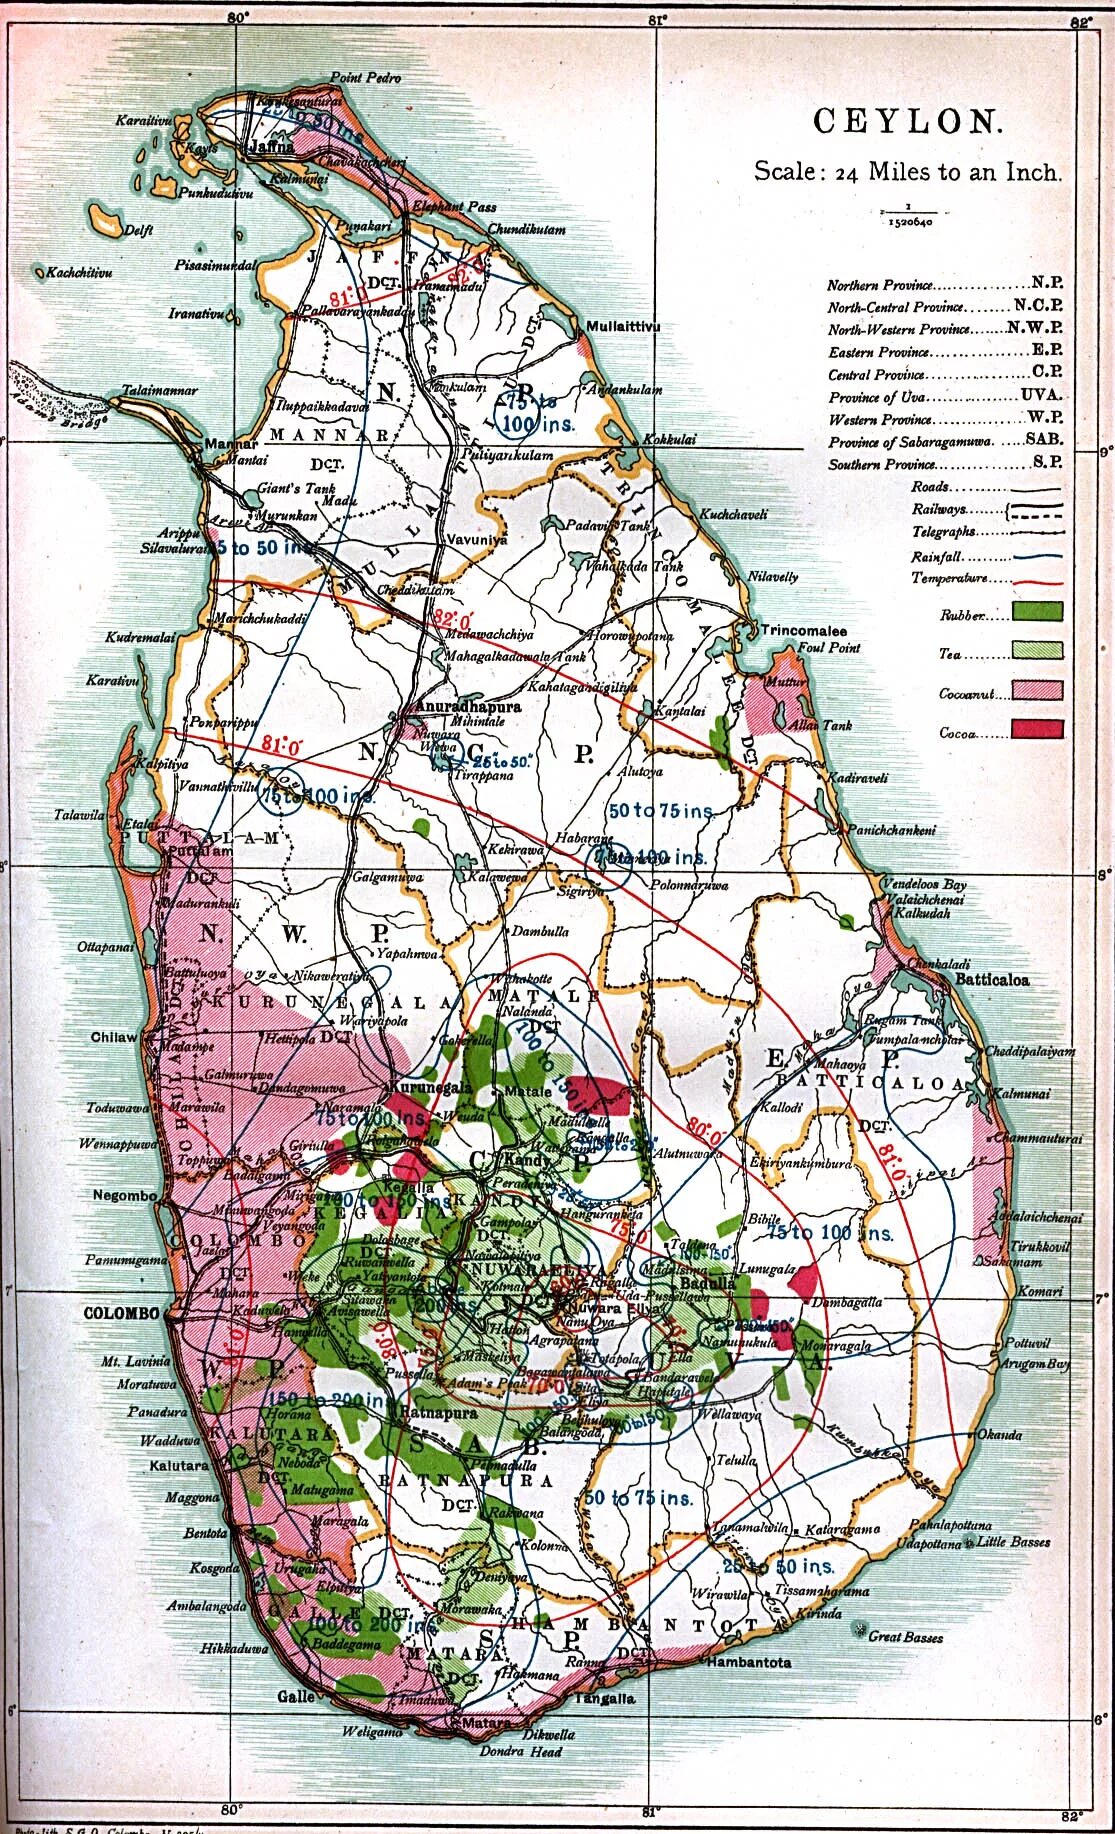 Шри Ланка на карте. Шри Ланка Цейлон на карте. Геология Шри Ланки. Остров Цейлон на карте. Карта достопримечательности шри